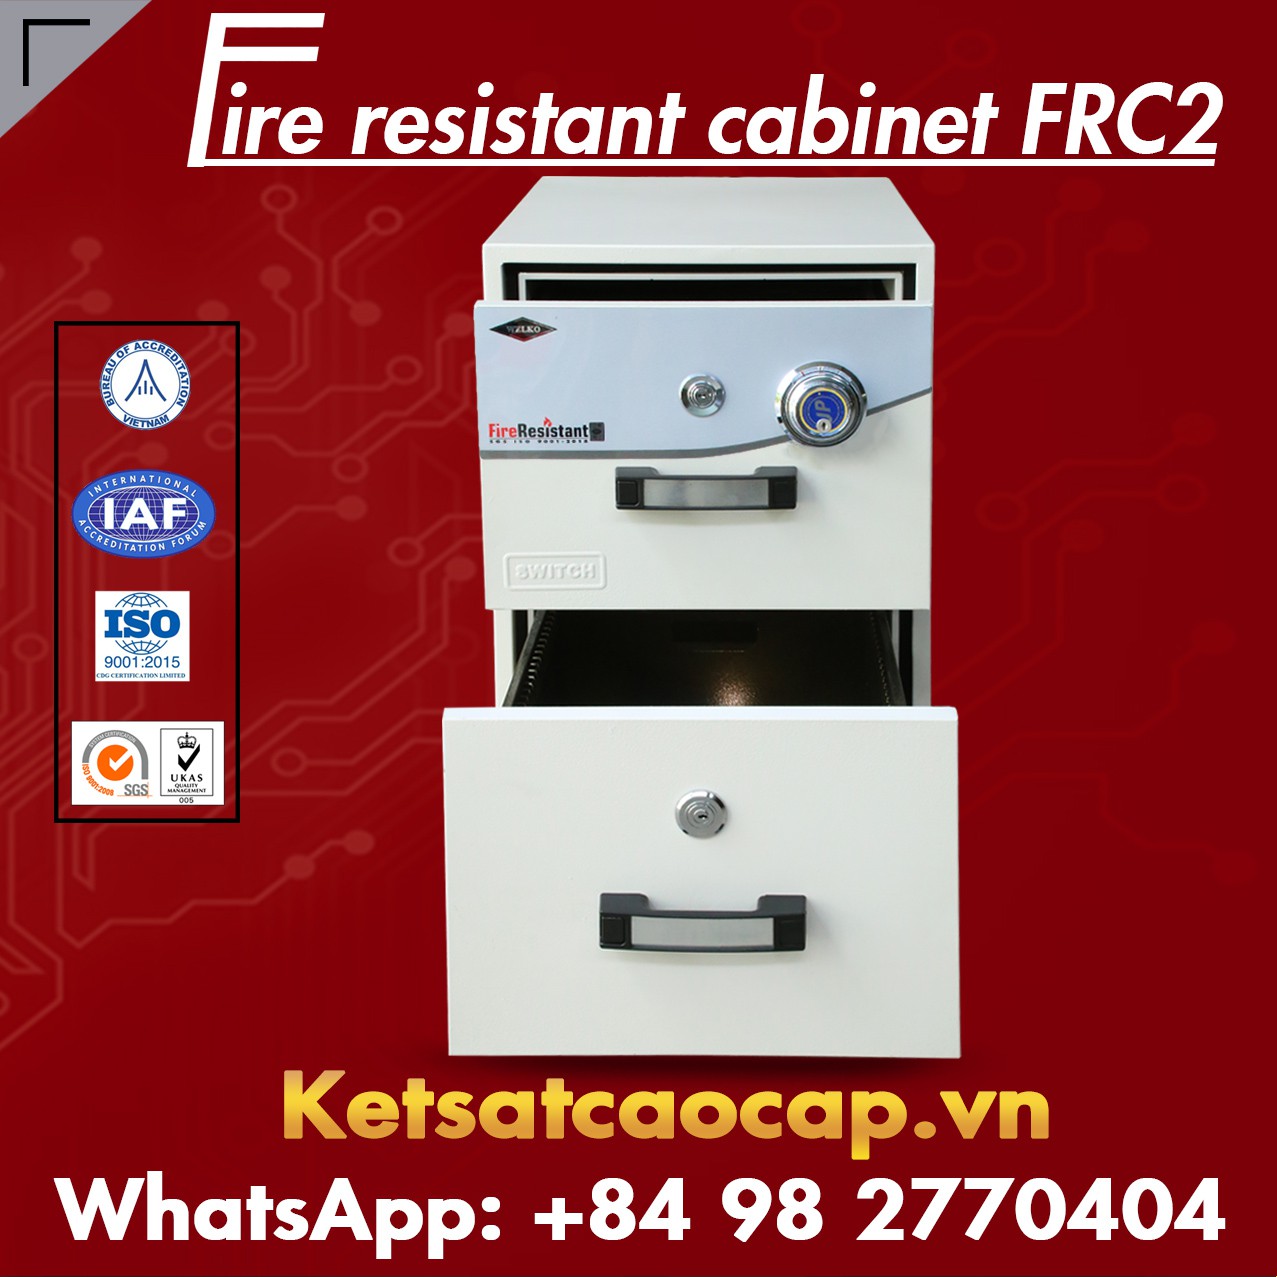 hình ảnh sản phẩm Tủ Sắt Chống Cháy KOREA FRC2 DK Brown